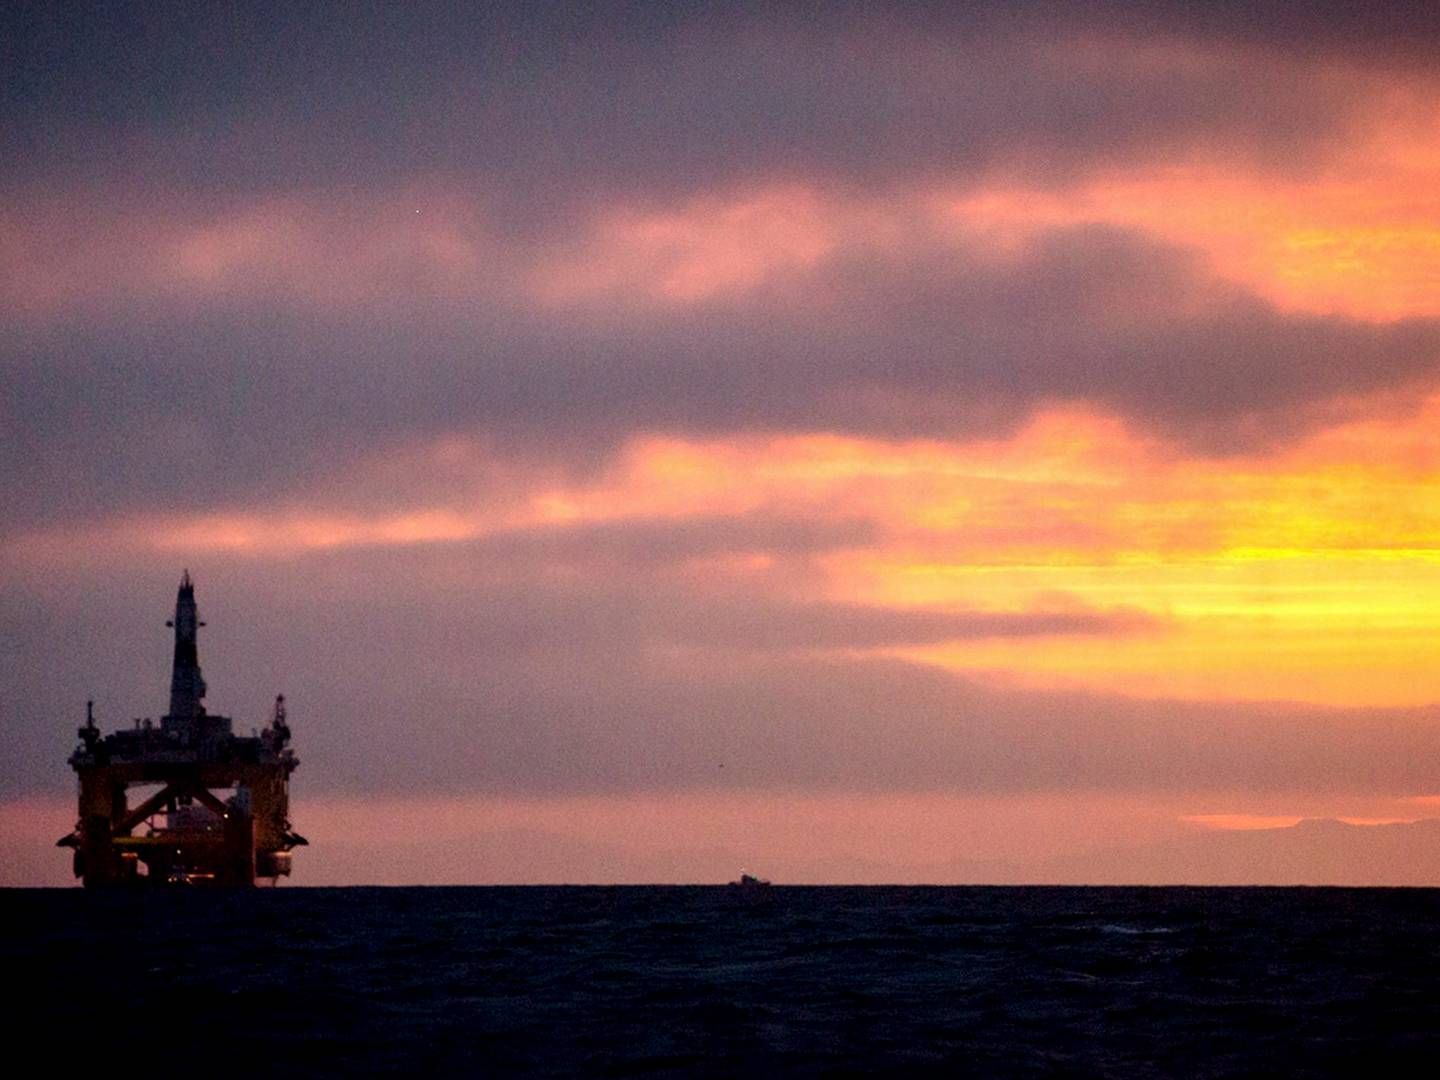 Også i de næste mange år ser det ud til, at olierigge snarere til end havmøller vil præge udsigten i den Mexicanske Golf. | Foto: Polfoto/ap/daniella Beccaria